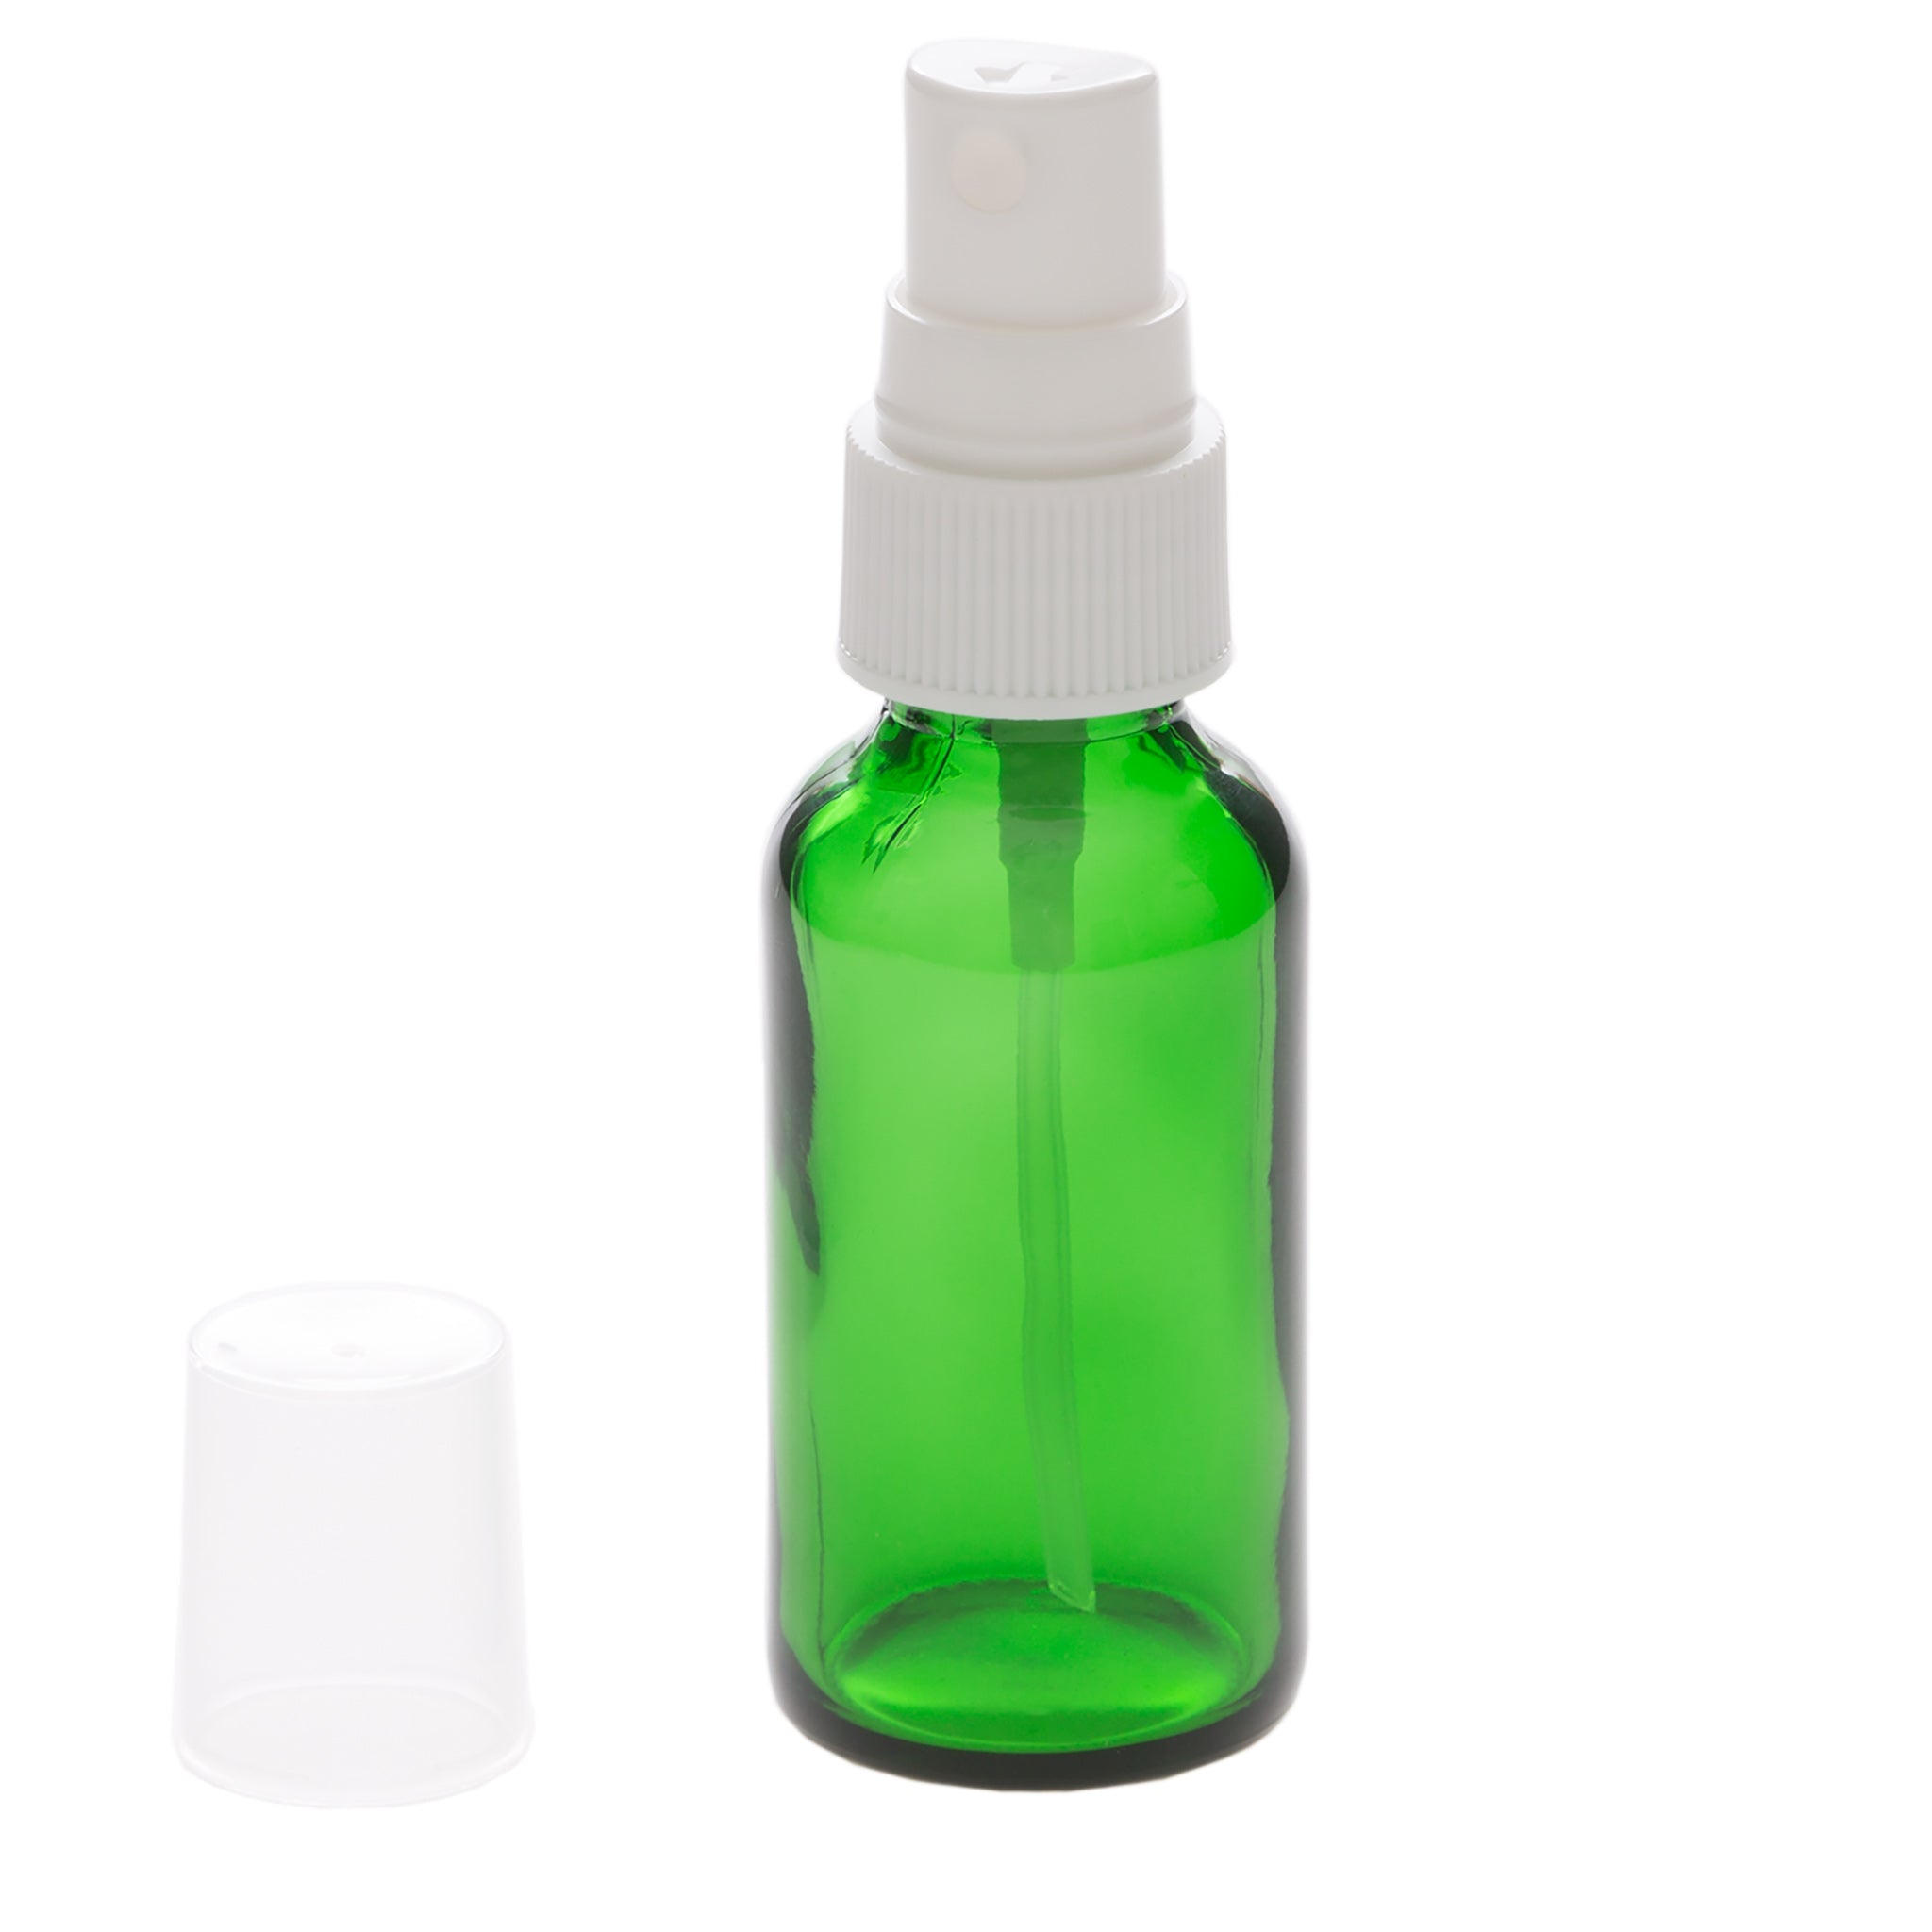 1 oz Green Glass Bottle with 20-400 White Fine Mist Sprayer